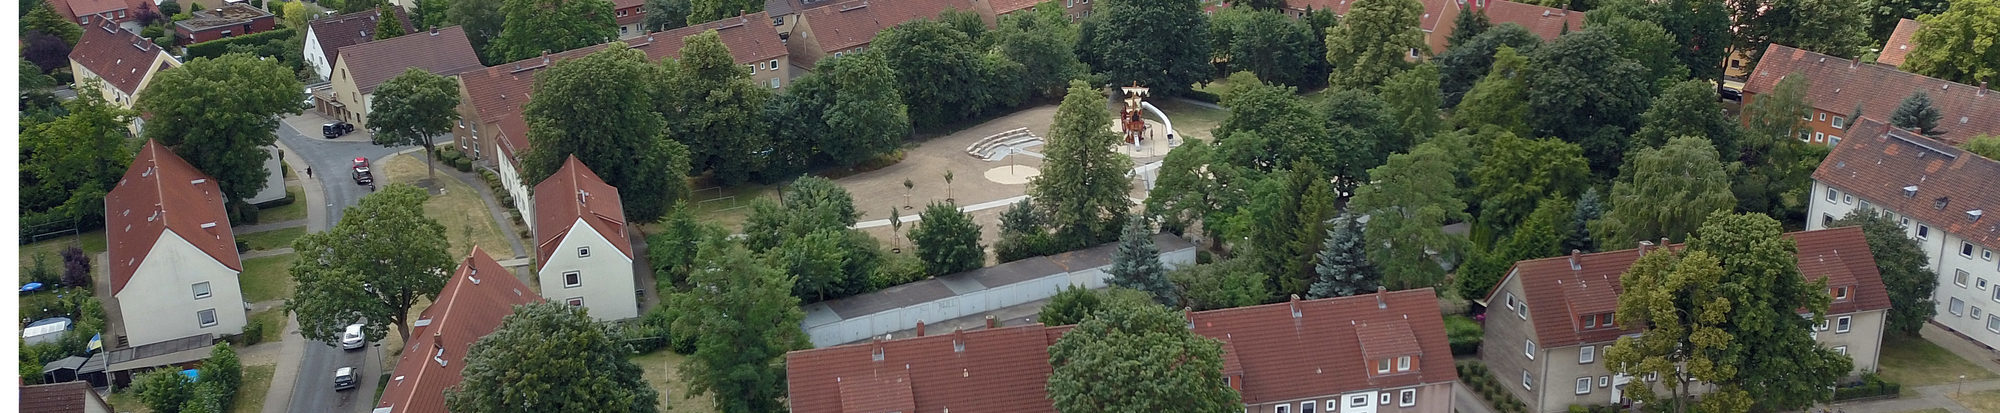 Der Landrattenspielplatz ist das erste große Projekt in Steterburg.